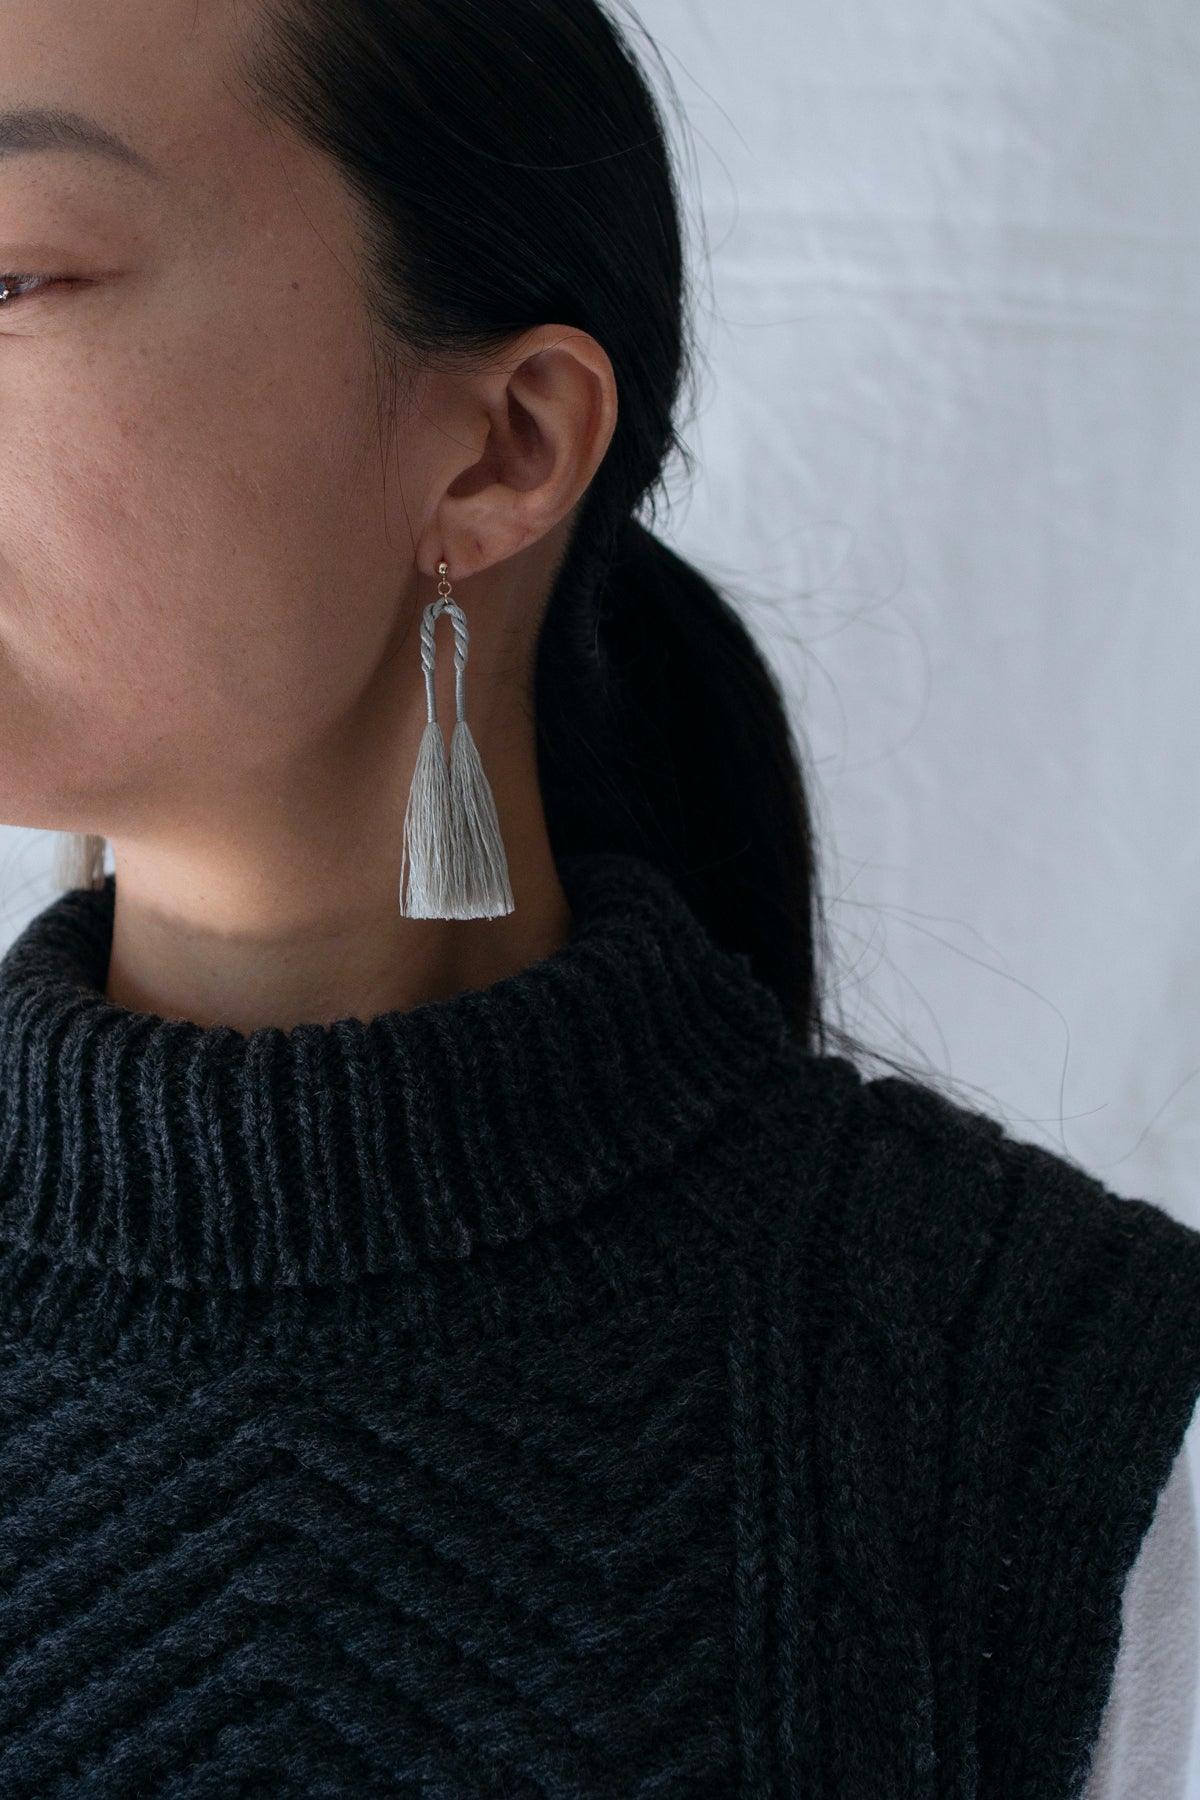 Arch tassel earrings | silver gray